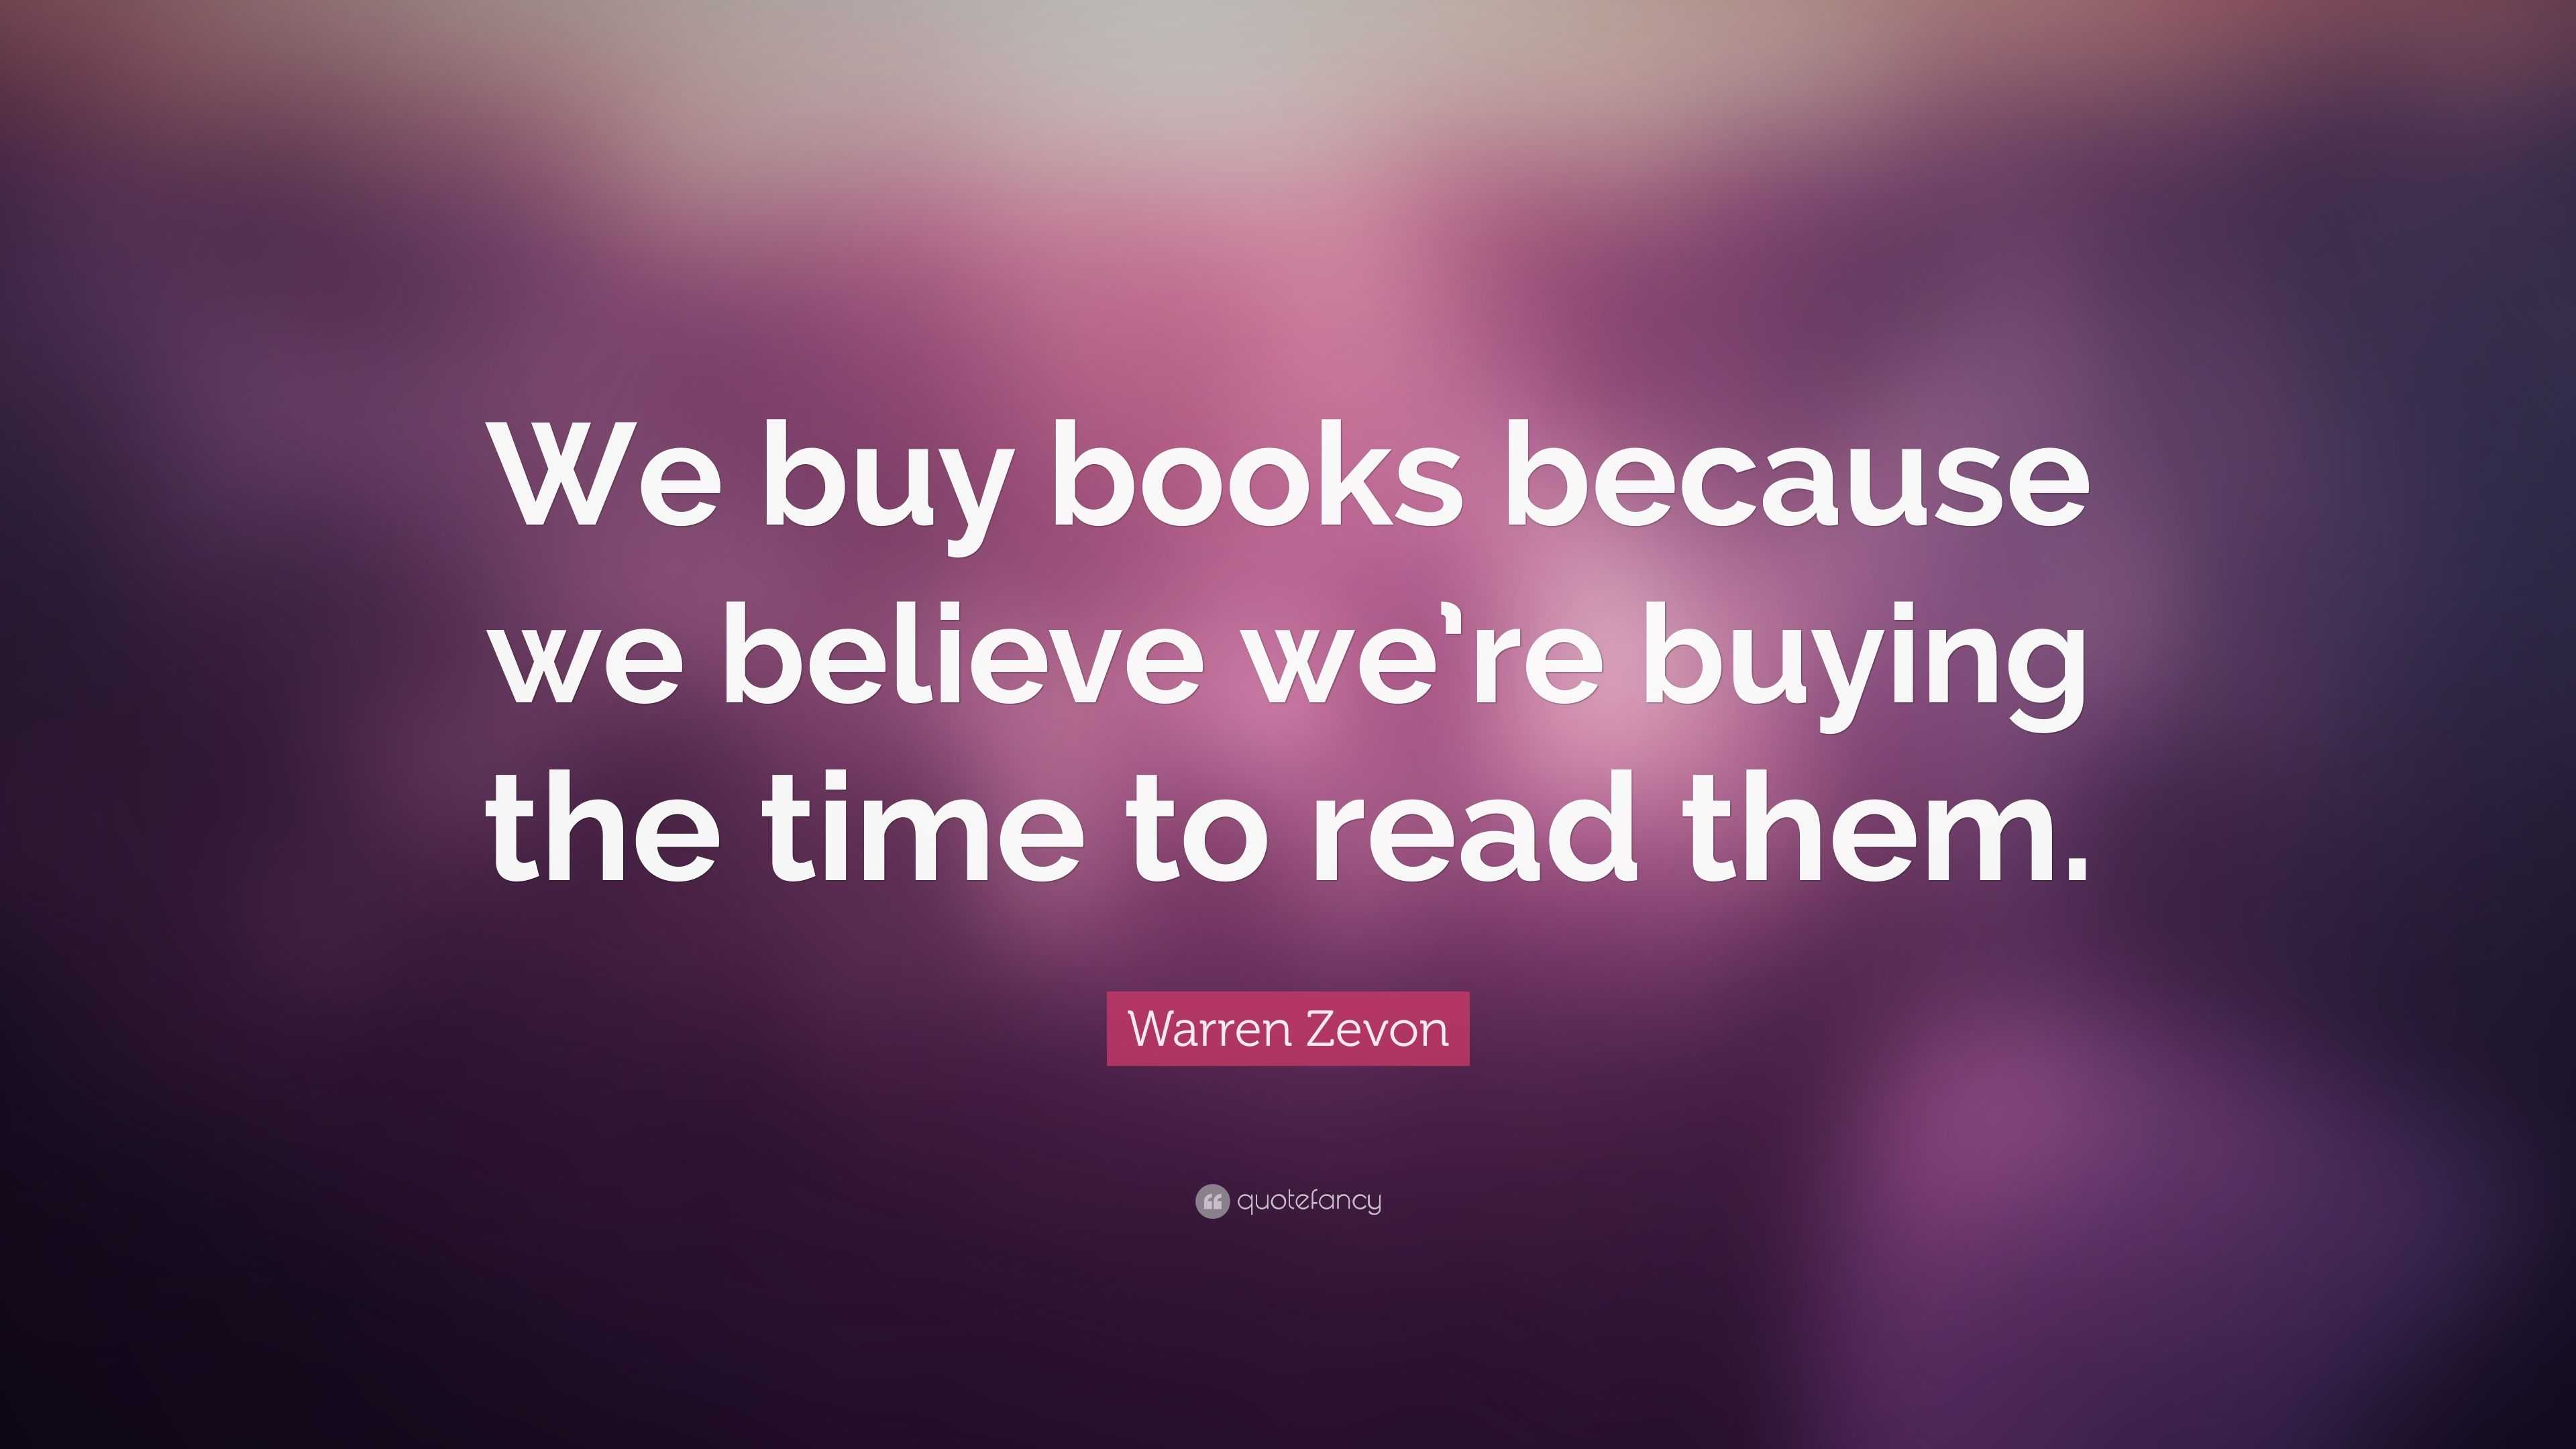 Warren Zevon Quote: “We buy books because we believe we’re buying the ...